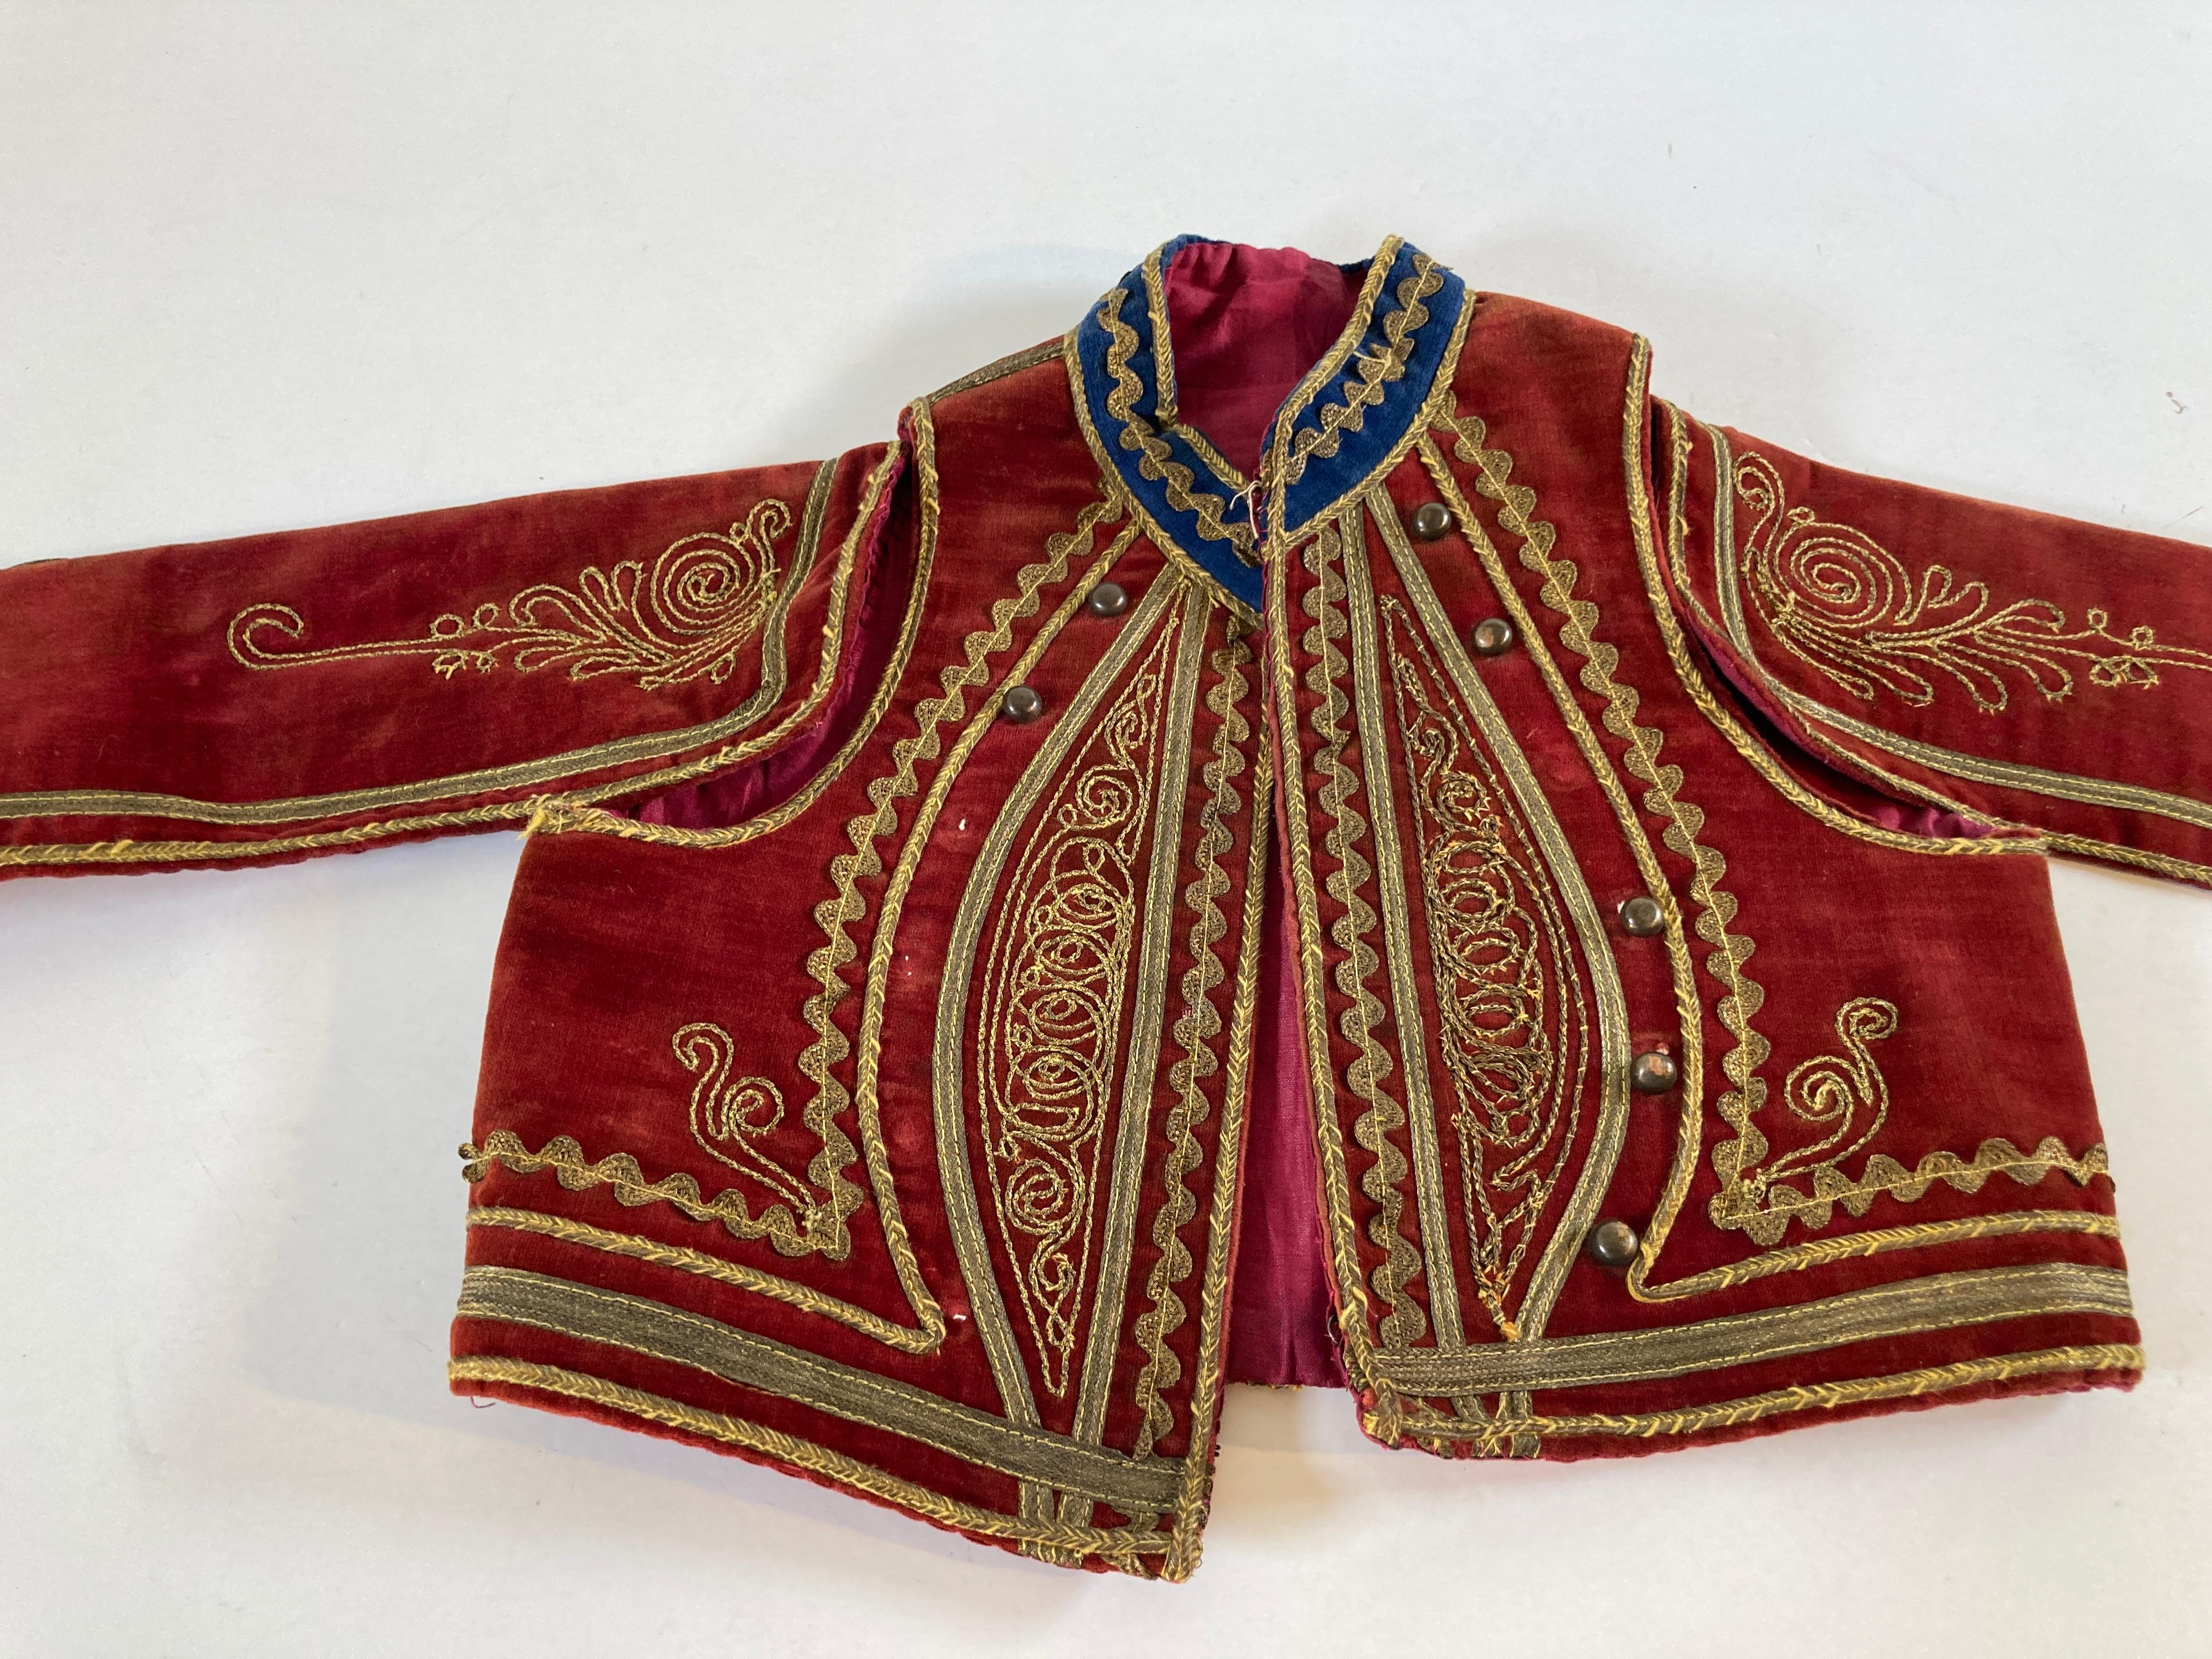 Antique Red Velvet Efe Zeybek Jacket Turkish Vest with Gold Embroidery For Sale 9